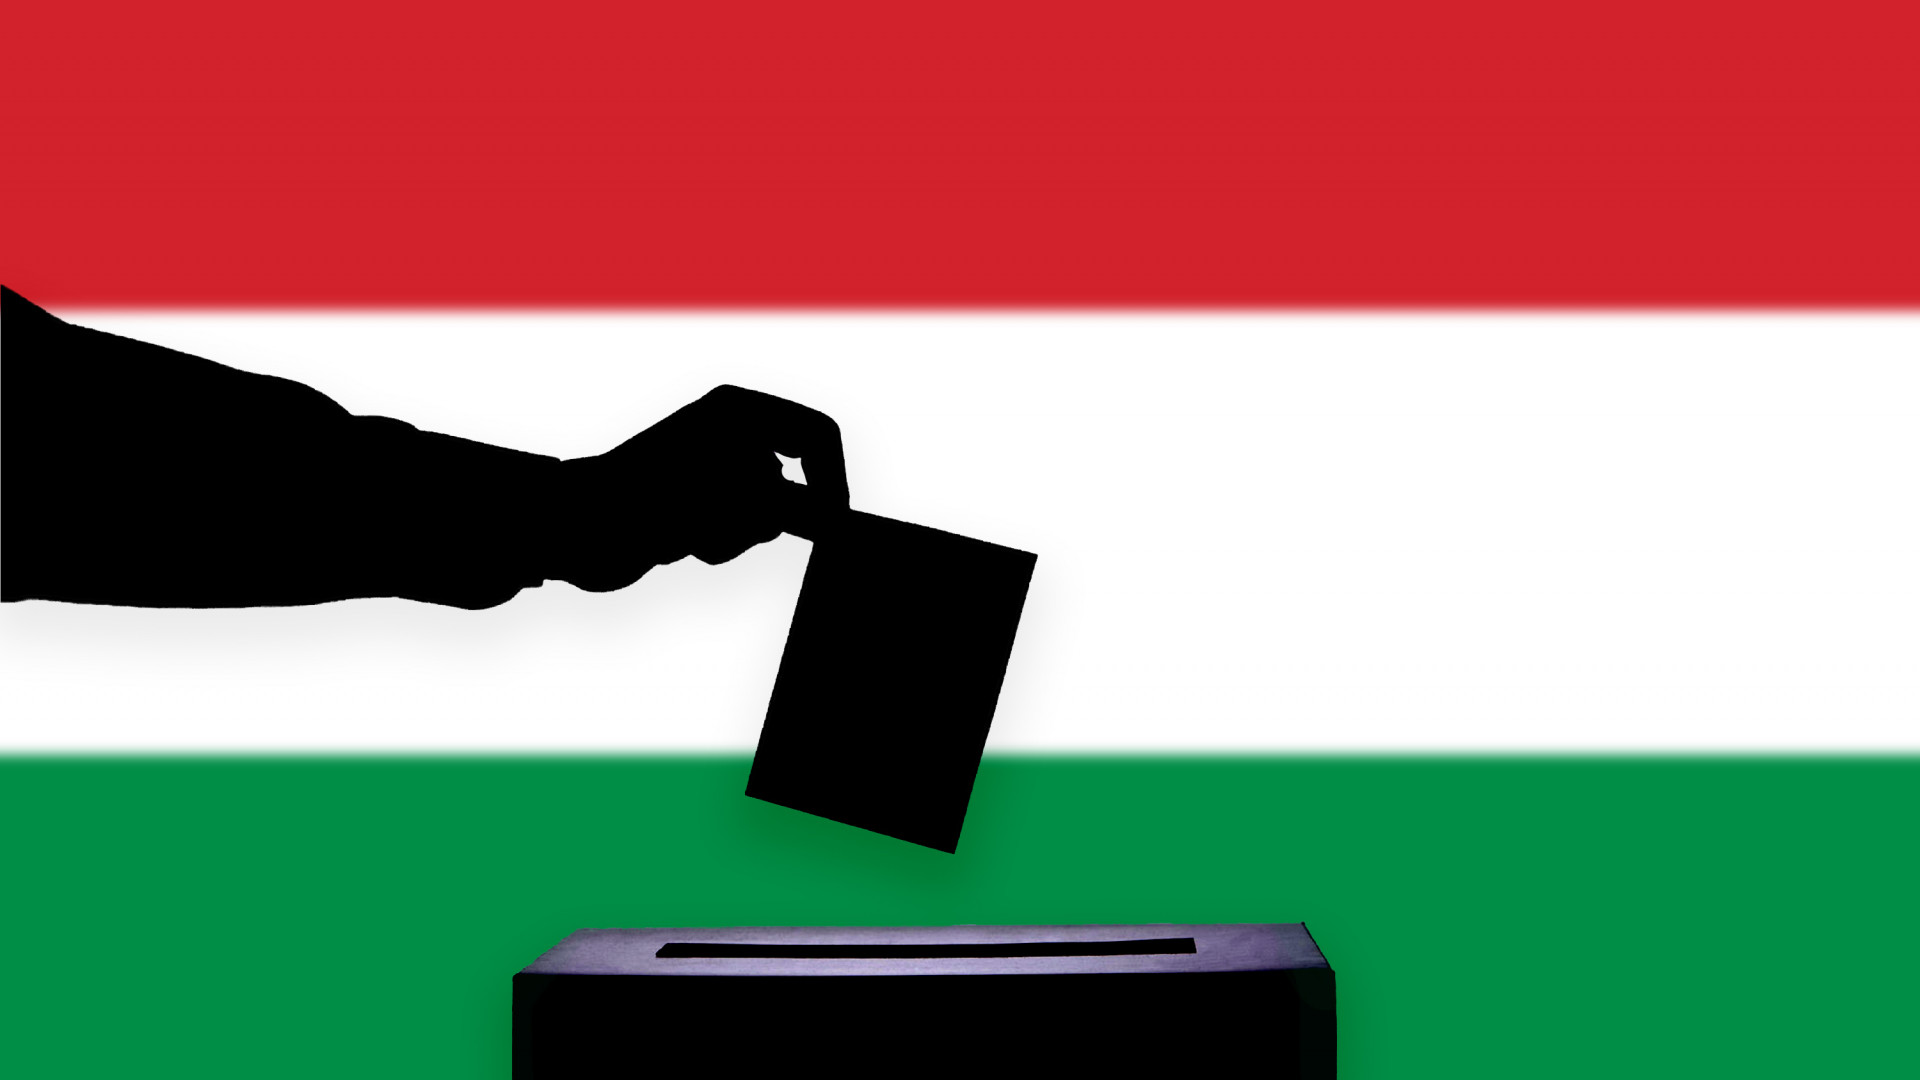 szavazas 2022 orszaggyulesi valasztas 2022 szavazas magyarorszag valasztas 2022 magyar valasztas 202 522061